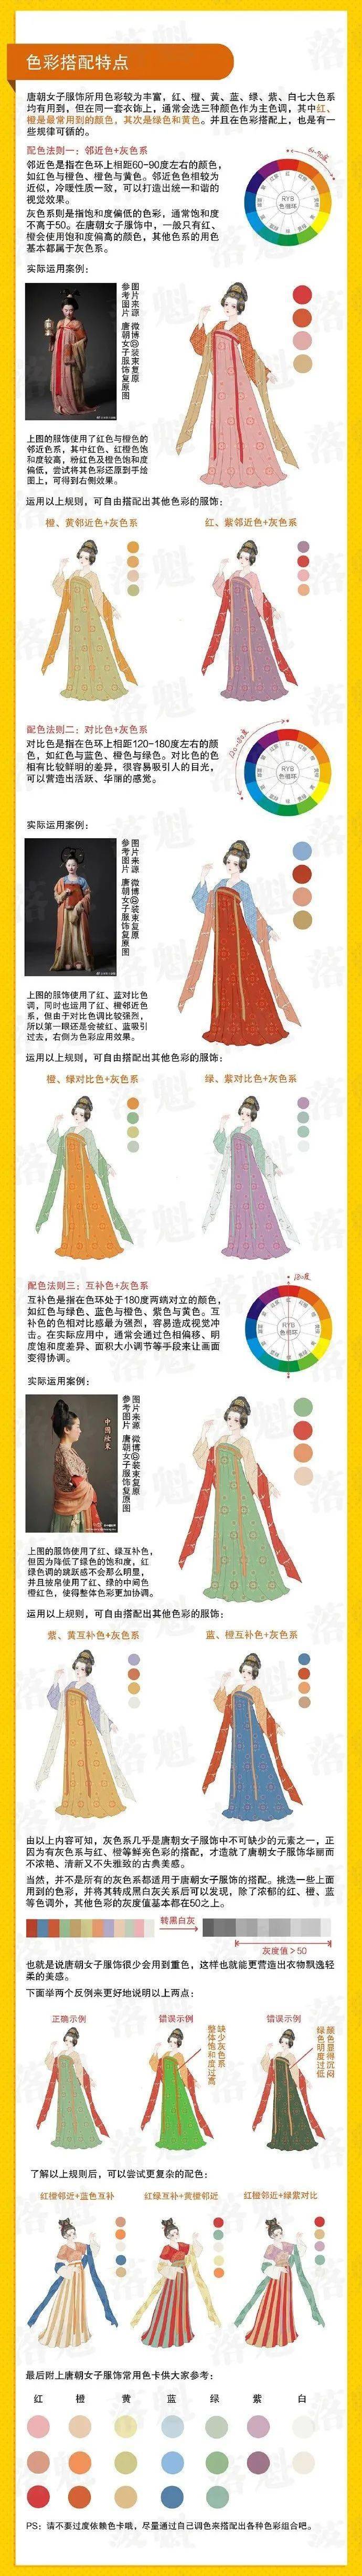 唐朝女子服饰图鉴服饰形制色彩衣褶人设等多方面内容讲解